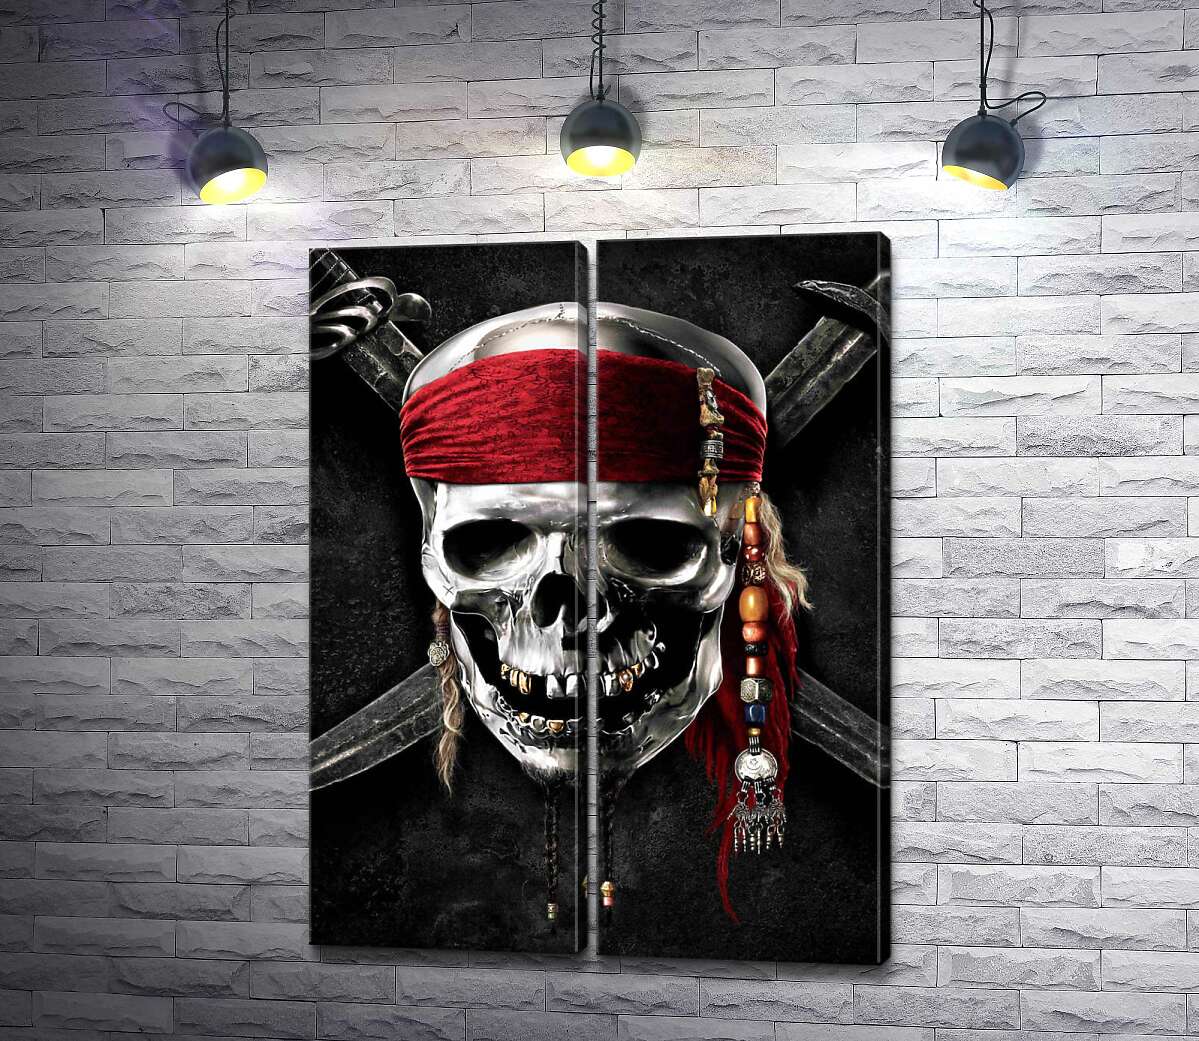 модульная картина Знаменитый череп Джека Воробья (Jack Sparrow) на фильме "Пираты Карибского моря" (Pirates of the Caribbean)